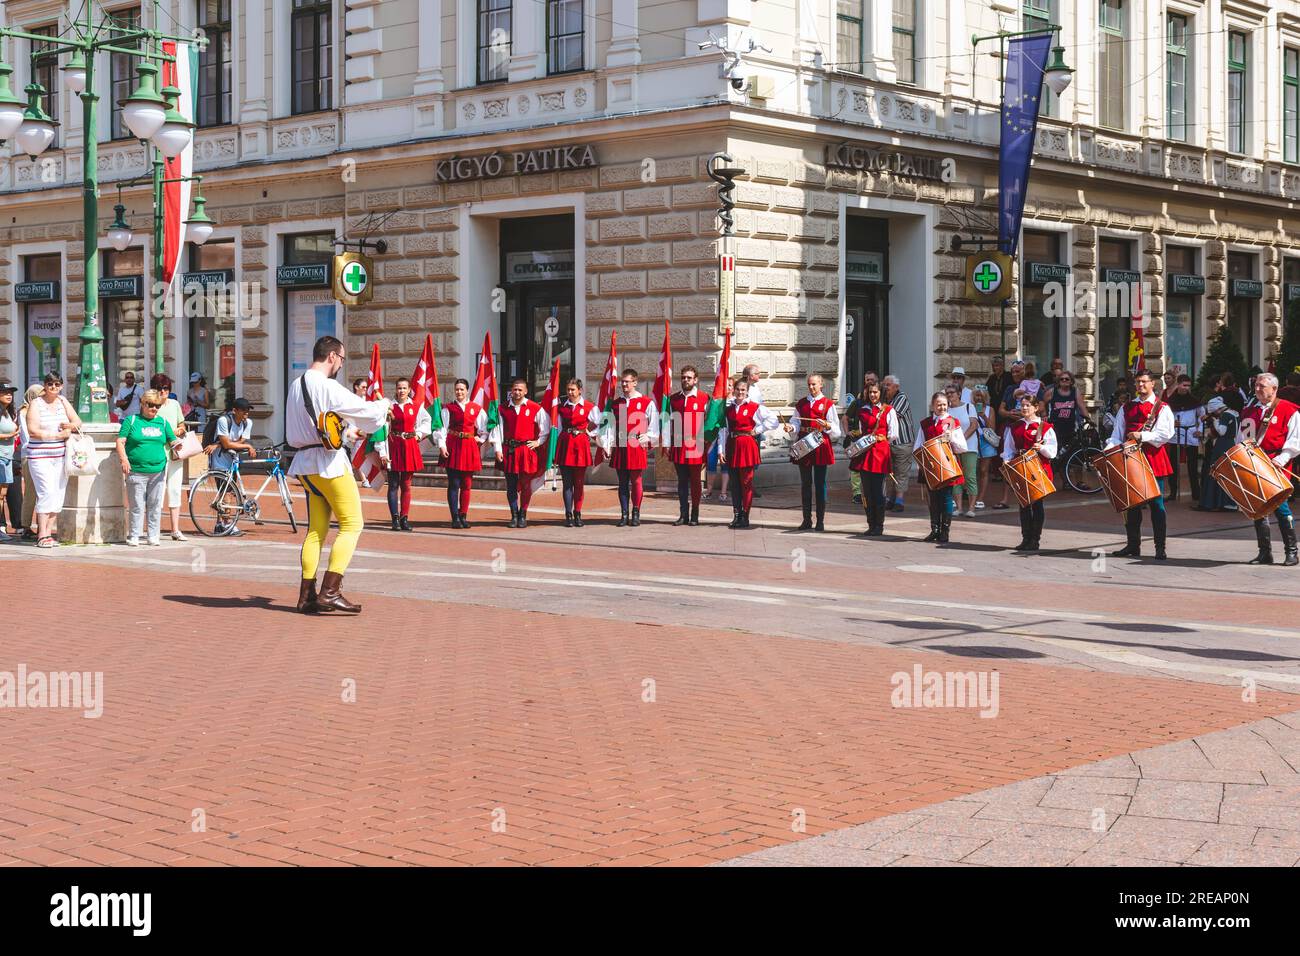 Kostümierte, musikalische und laute Parade am Gedenktag des Nándorfehérvár-Sieges in Szeged, Ungarn Stockfoto